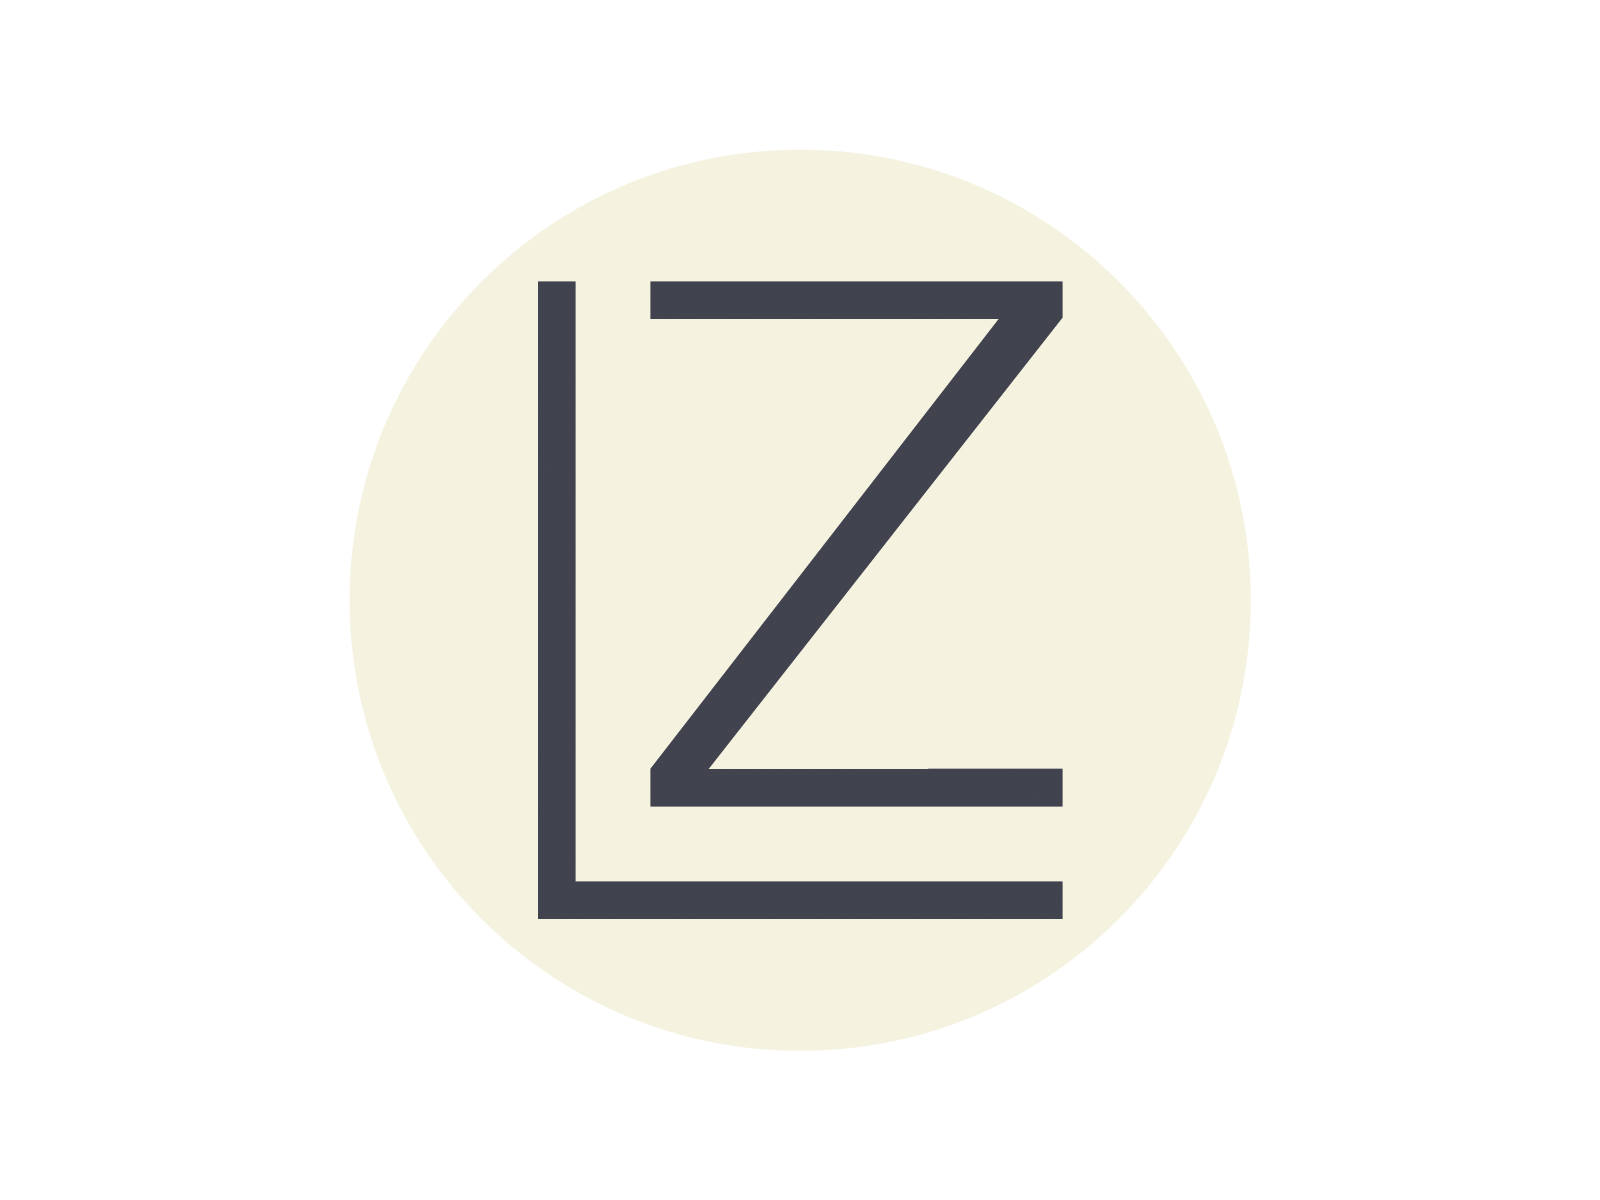 LZ Logo Icon by Montana Rebeccah on Dribbble